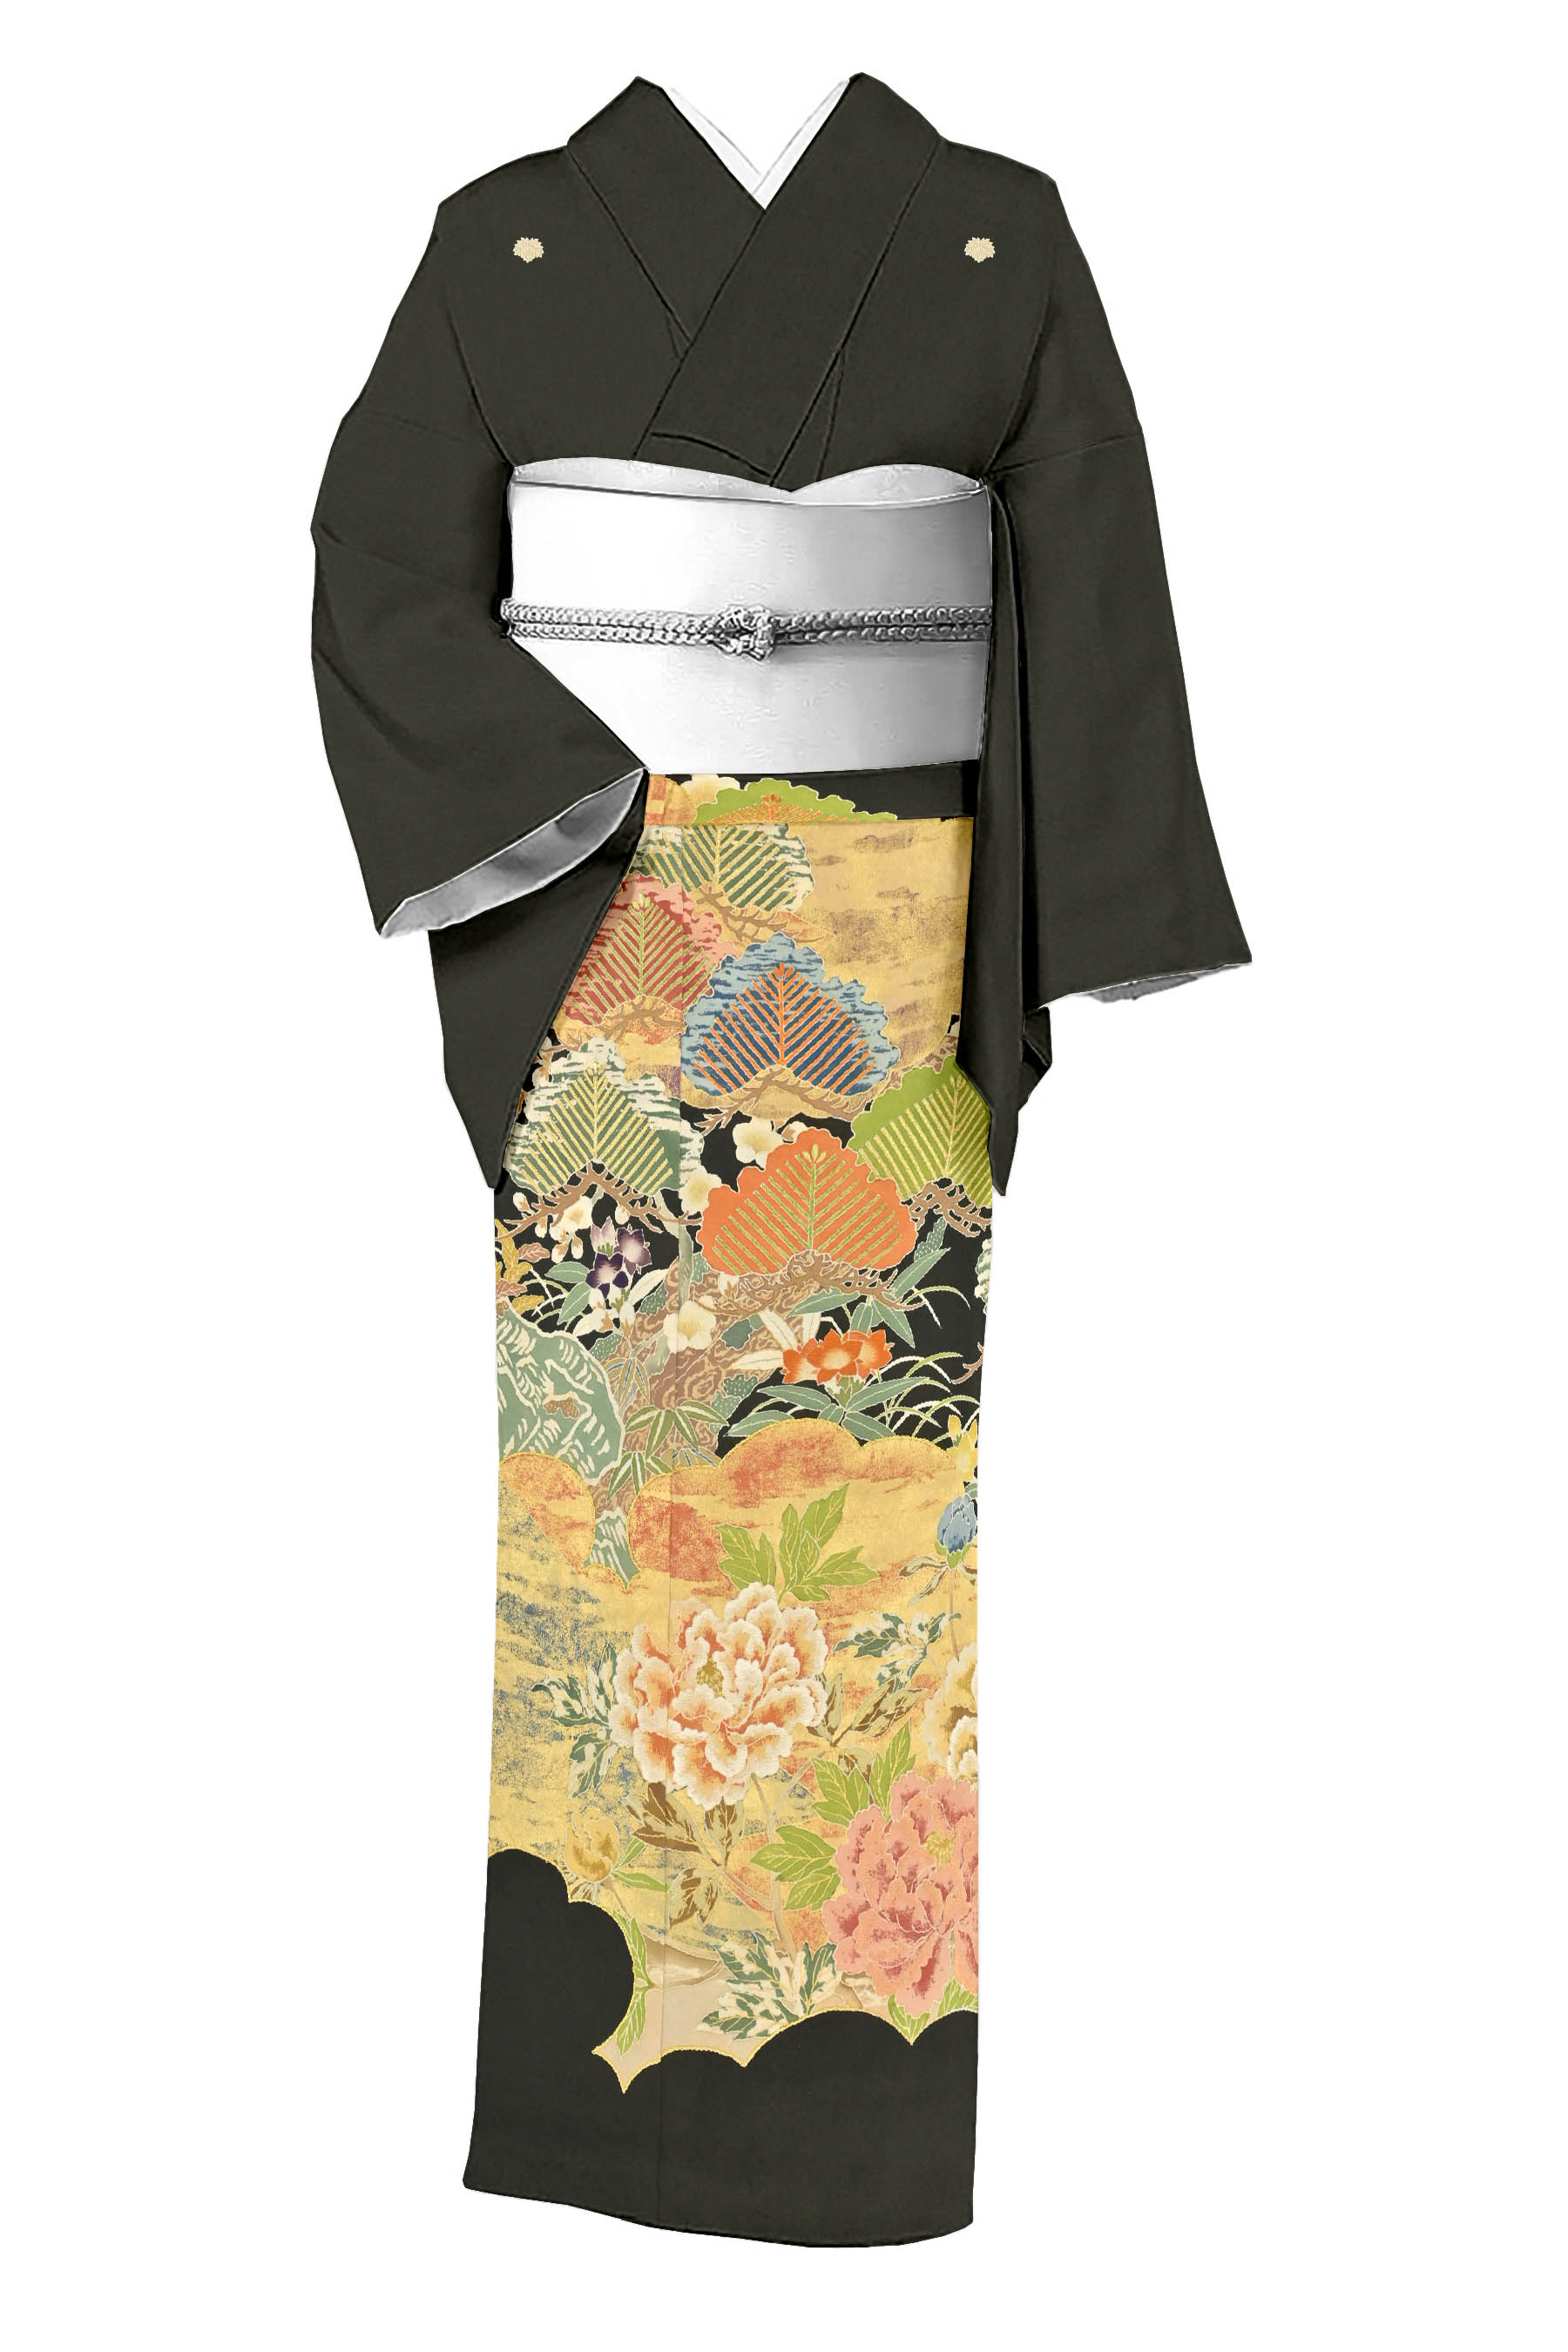 選ぶなら 大村洋子 きものヱビス▪️刺繍訪問着 京都誂え レディース